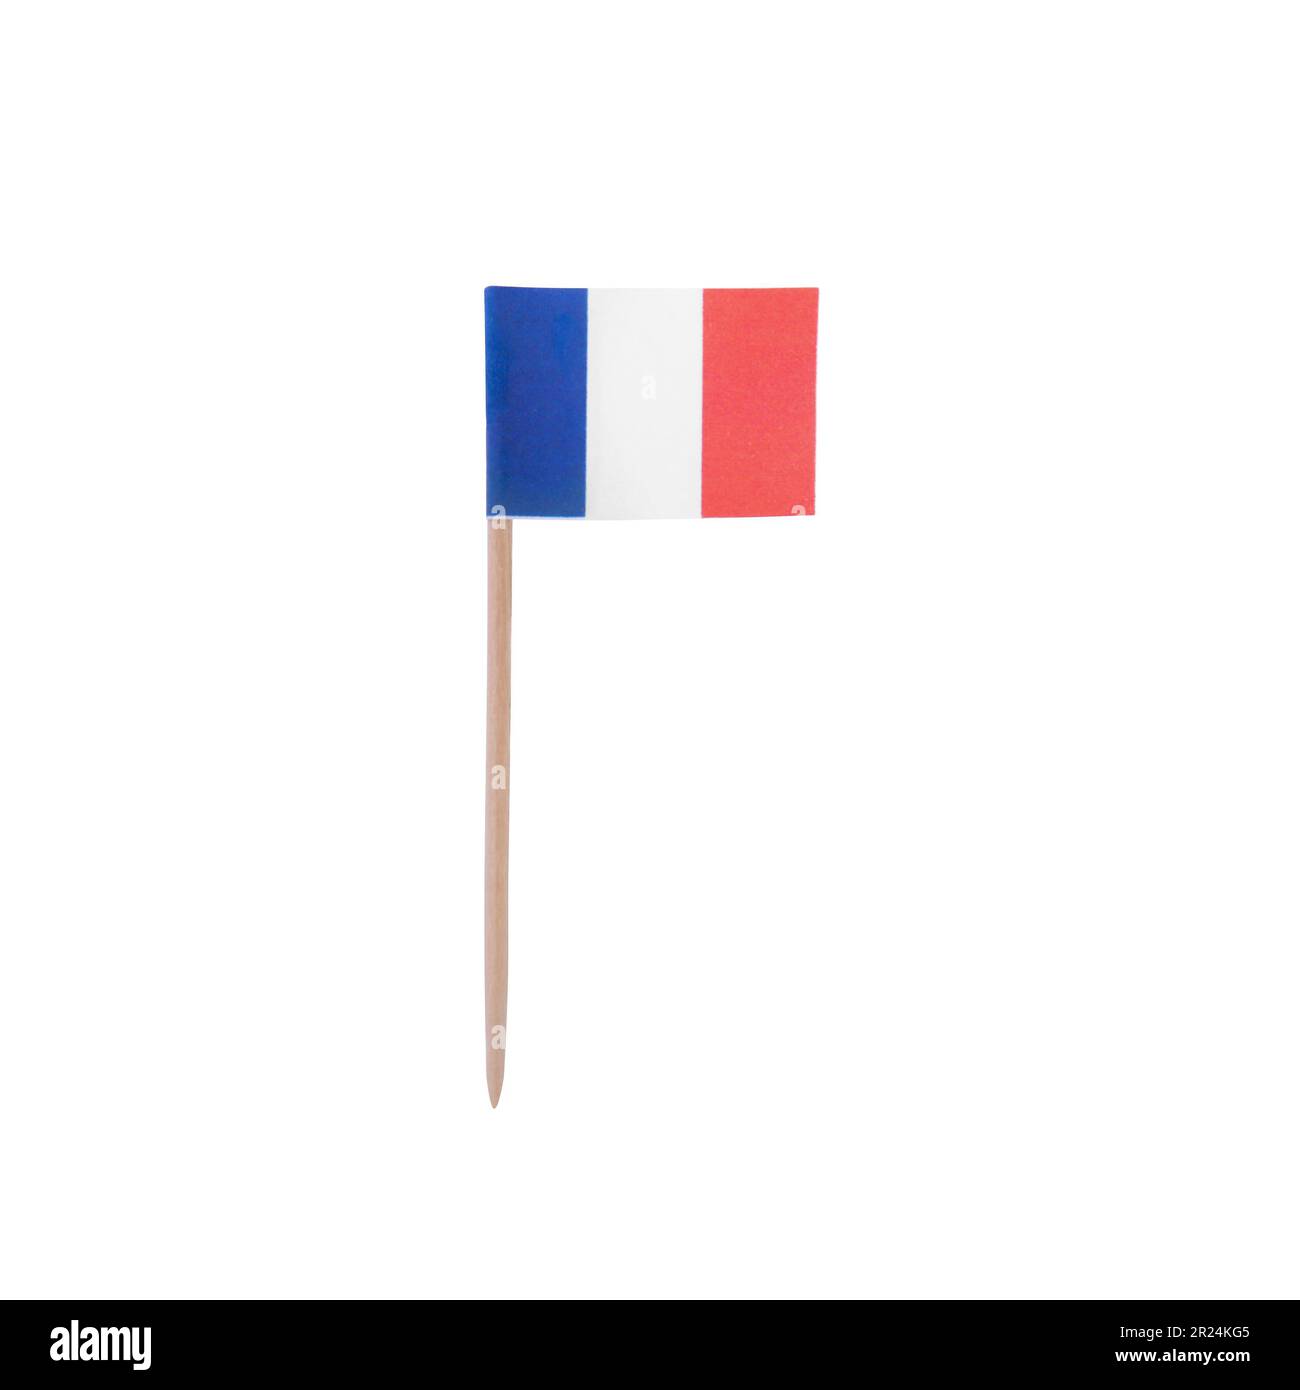 Frankreich Französische Fahne Franzose France Deko Sticker